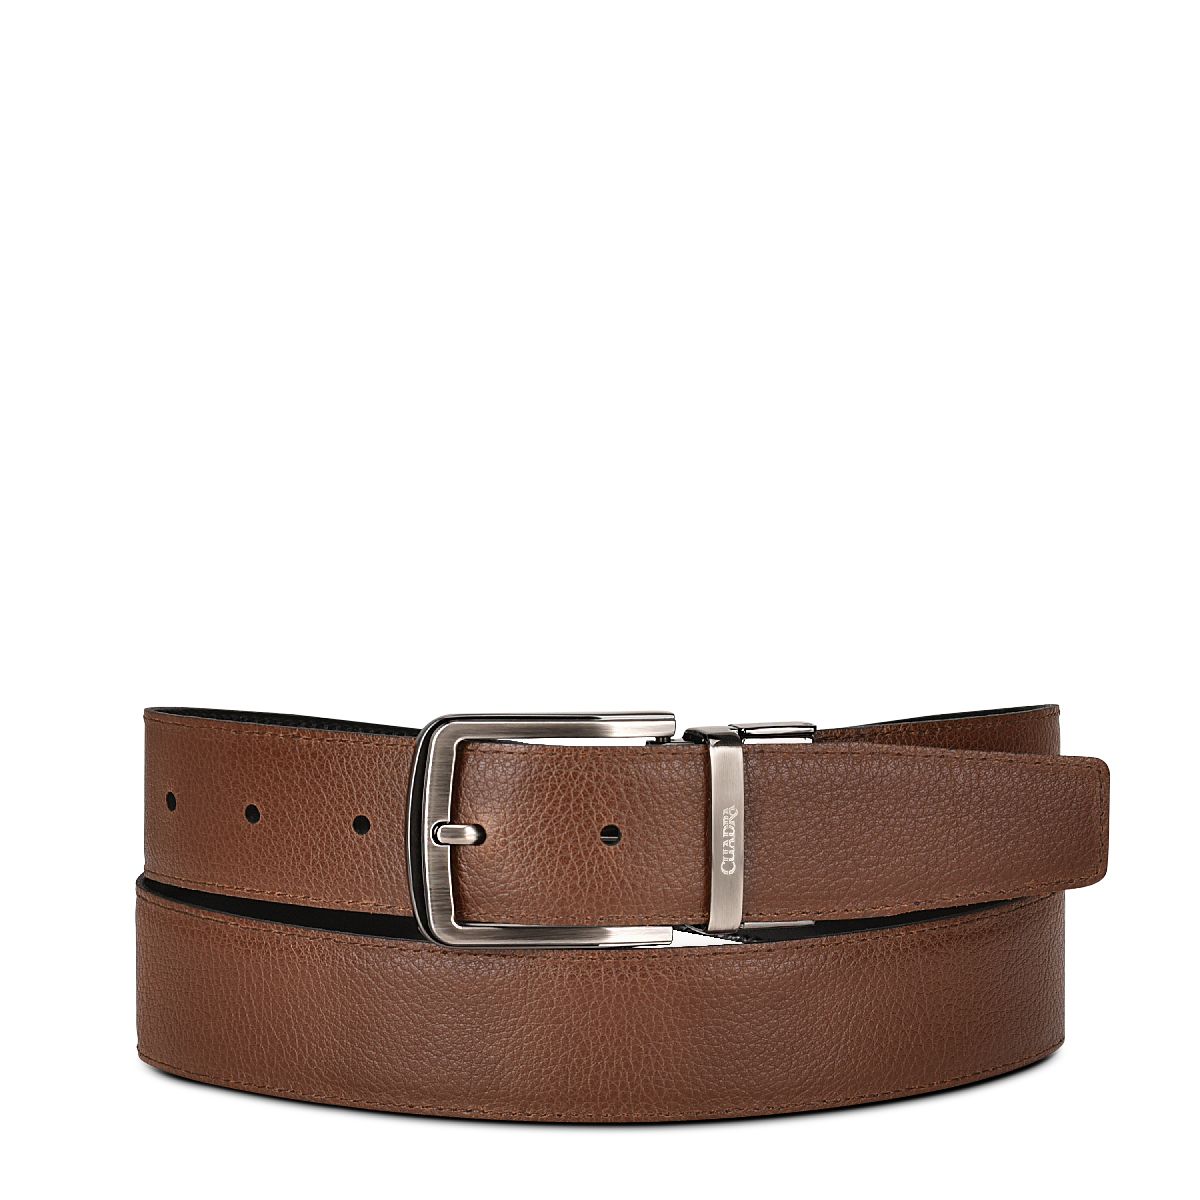 Formal reversible leather belt for men - 426 - Cuadra Shop